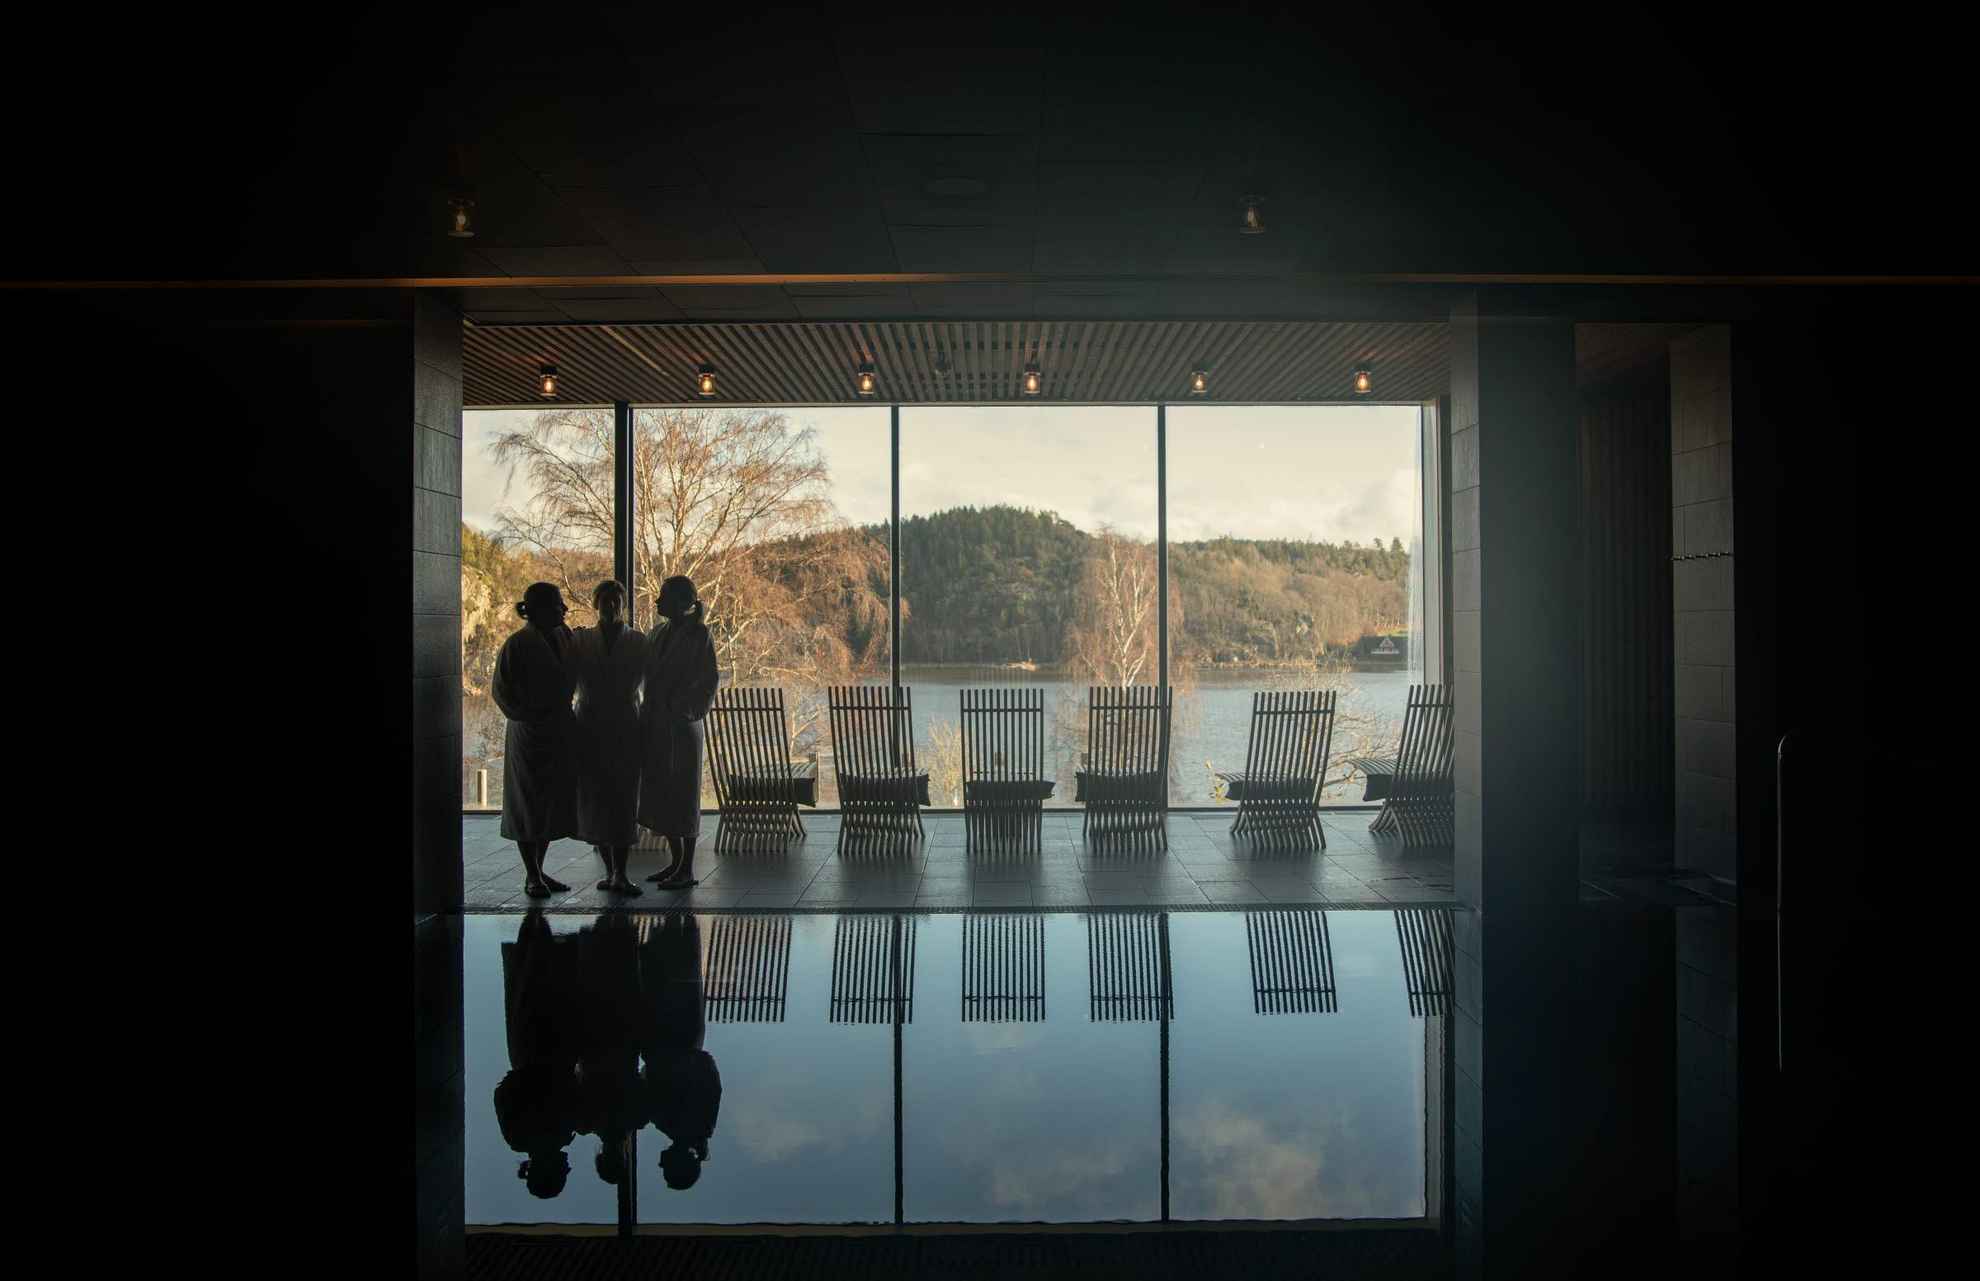 Gäste des Vann Spas laufen an einem Pool vorbei und blicken durch das Panorama Fenster auf die schwedische Landschaft.